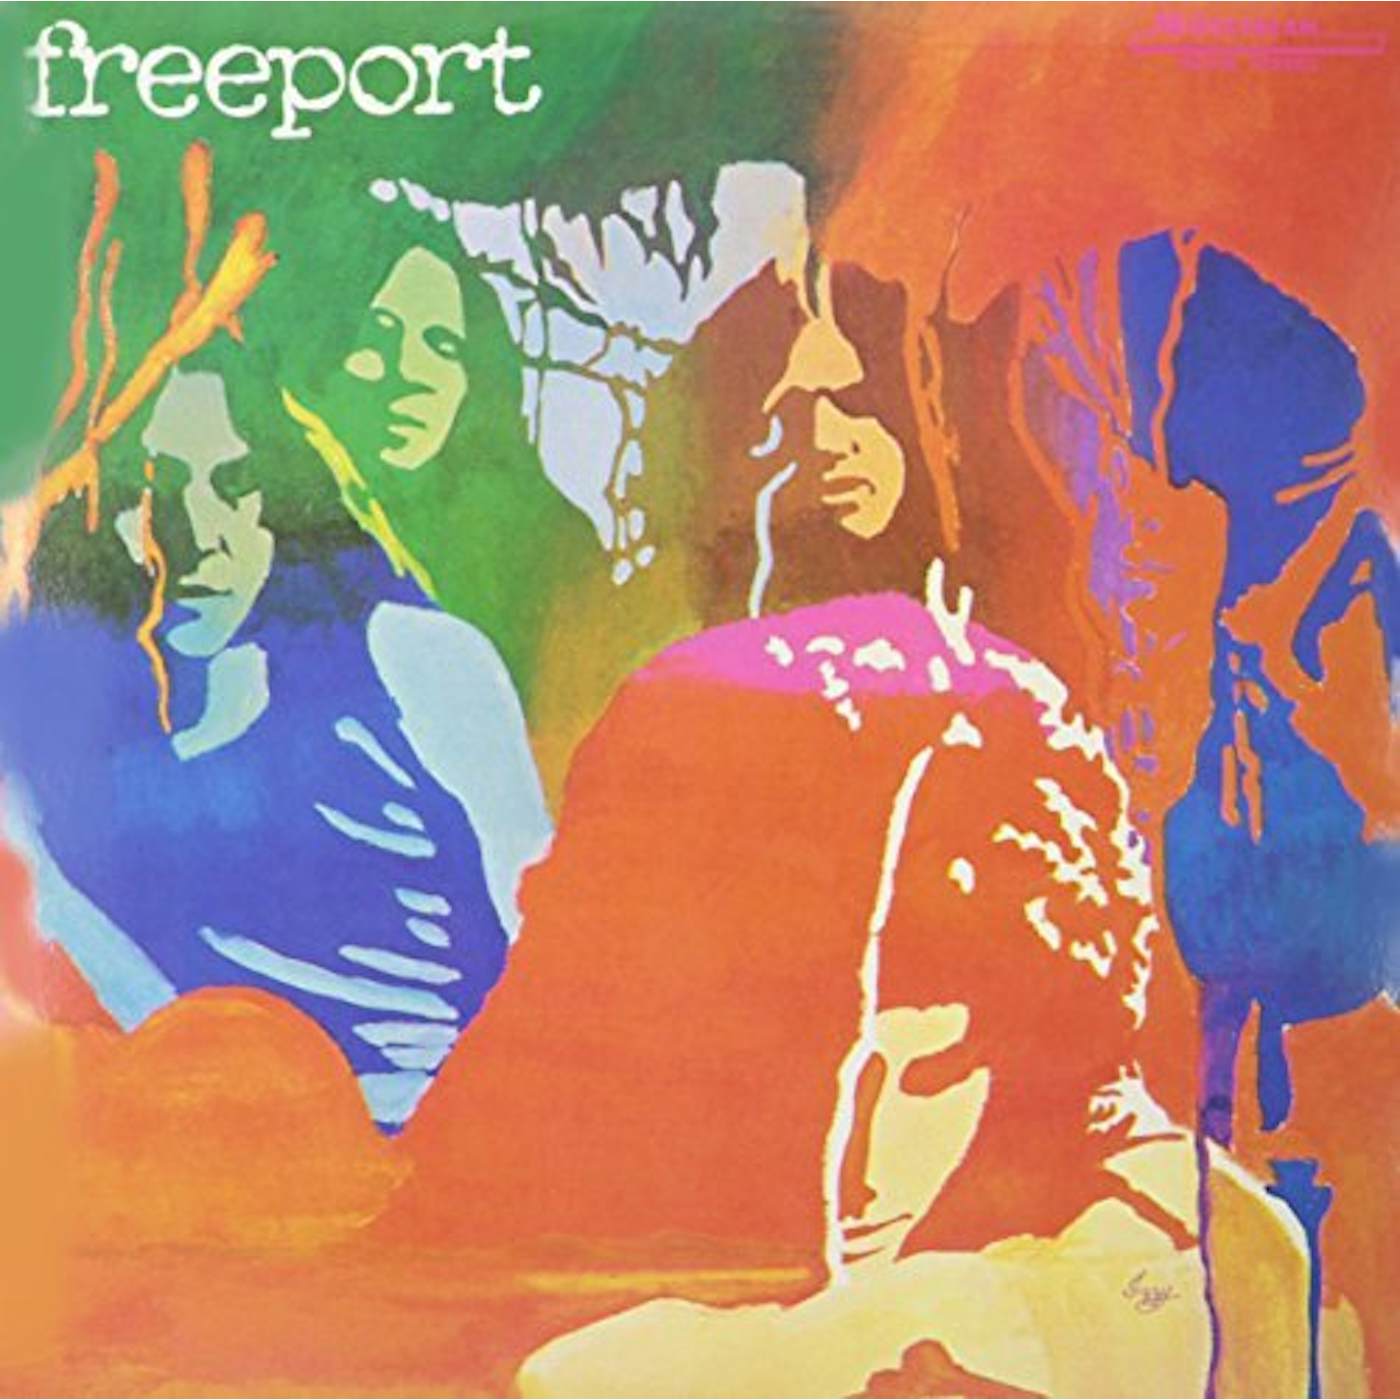 Freeport Vinyl Record